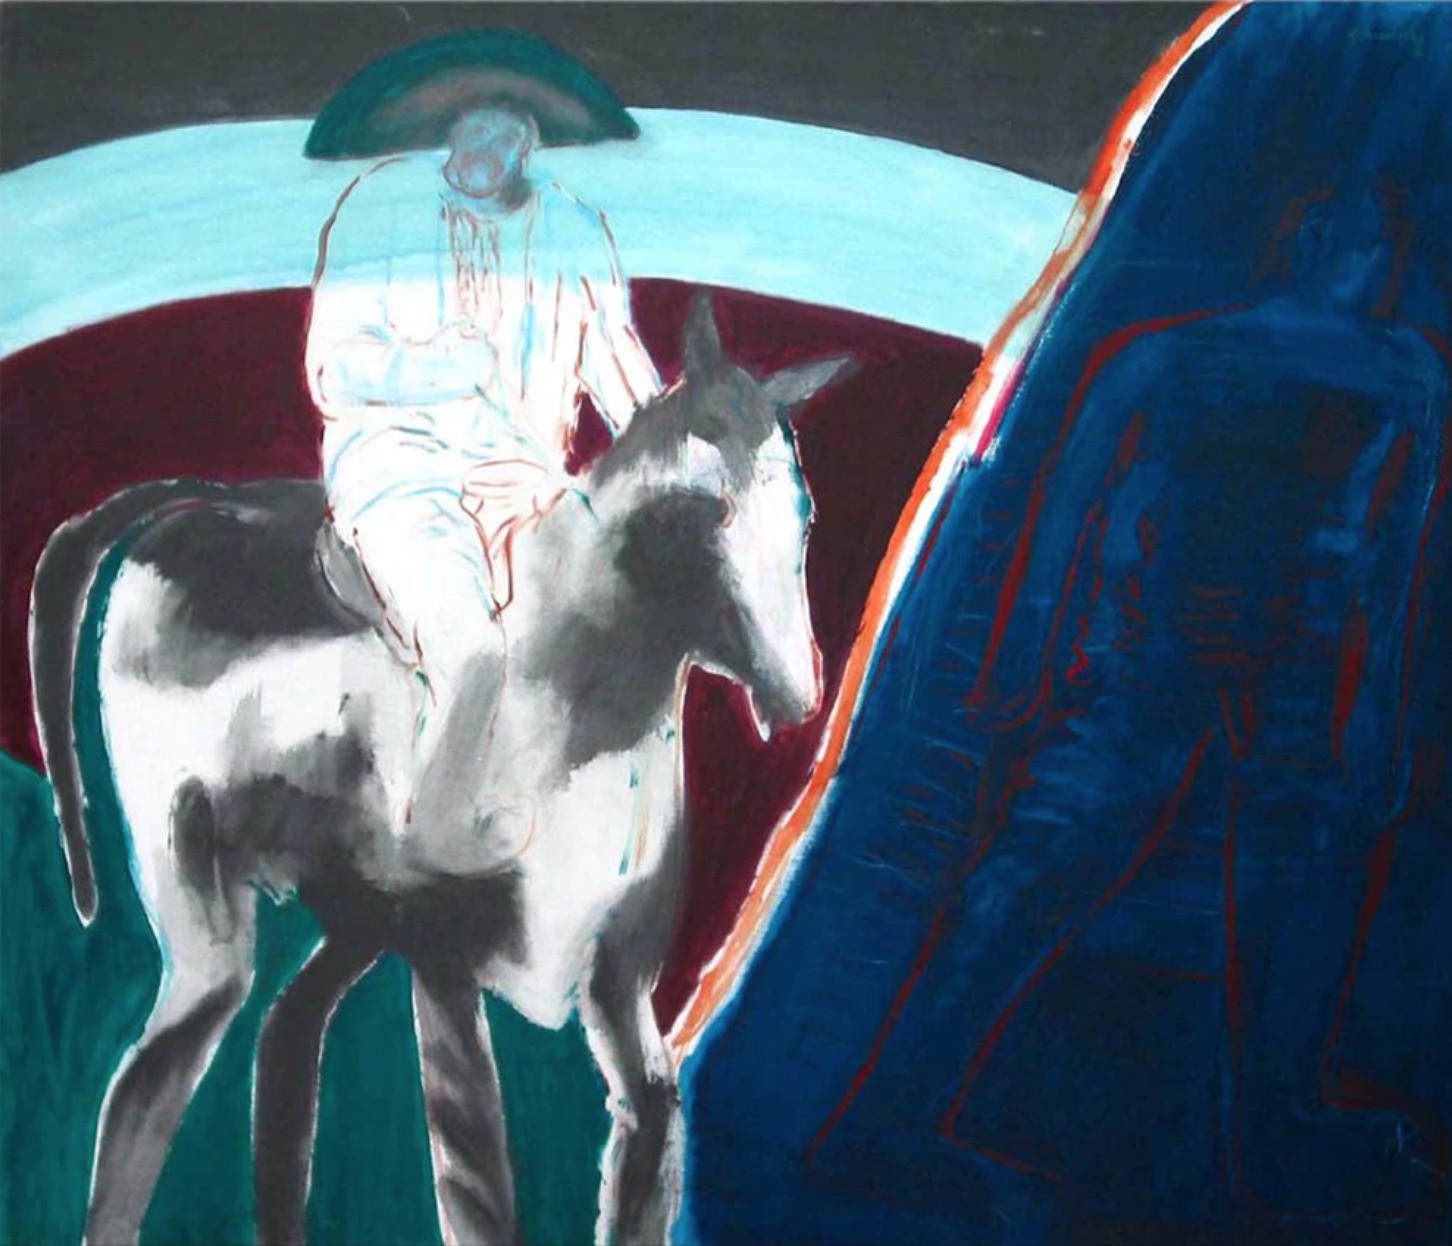 Gilberto Aceves Navarro, Pancho Villa atrapa a su unicornio, 1996, acrílico en tela, 120 x 140 cm. Cortesía: Fundación Aceves Navarro AC